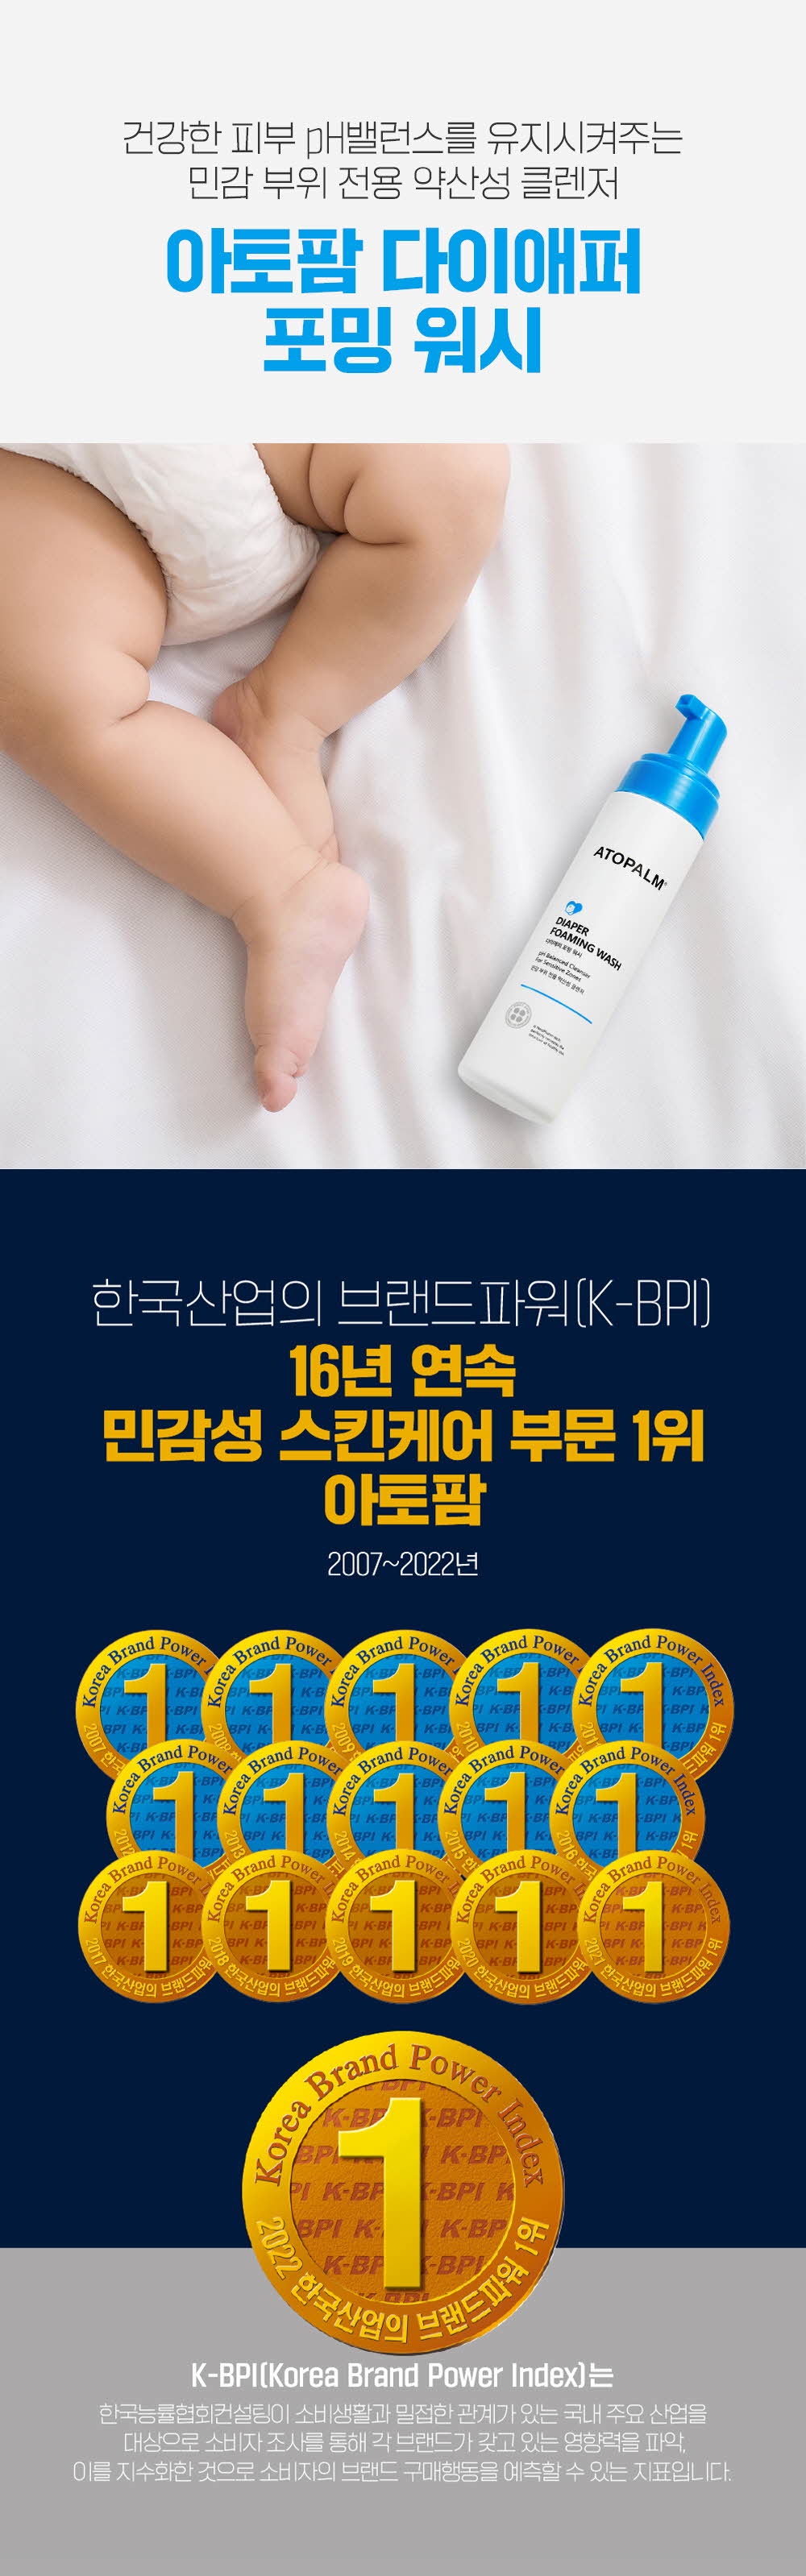 건강한 피부 pH밸런스를 유지시켜주는 민감 부위 전용 약산성 클렌저 아토팜 다이애퍼 포밍 워시
	한국산업의 브랜드파워(K-BPI) 16년 연속 민감성 스킨케어 부문 1위 아토팜 2007~2022년